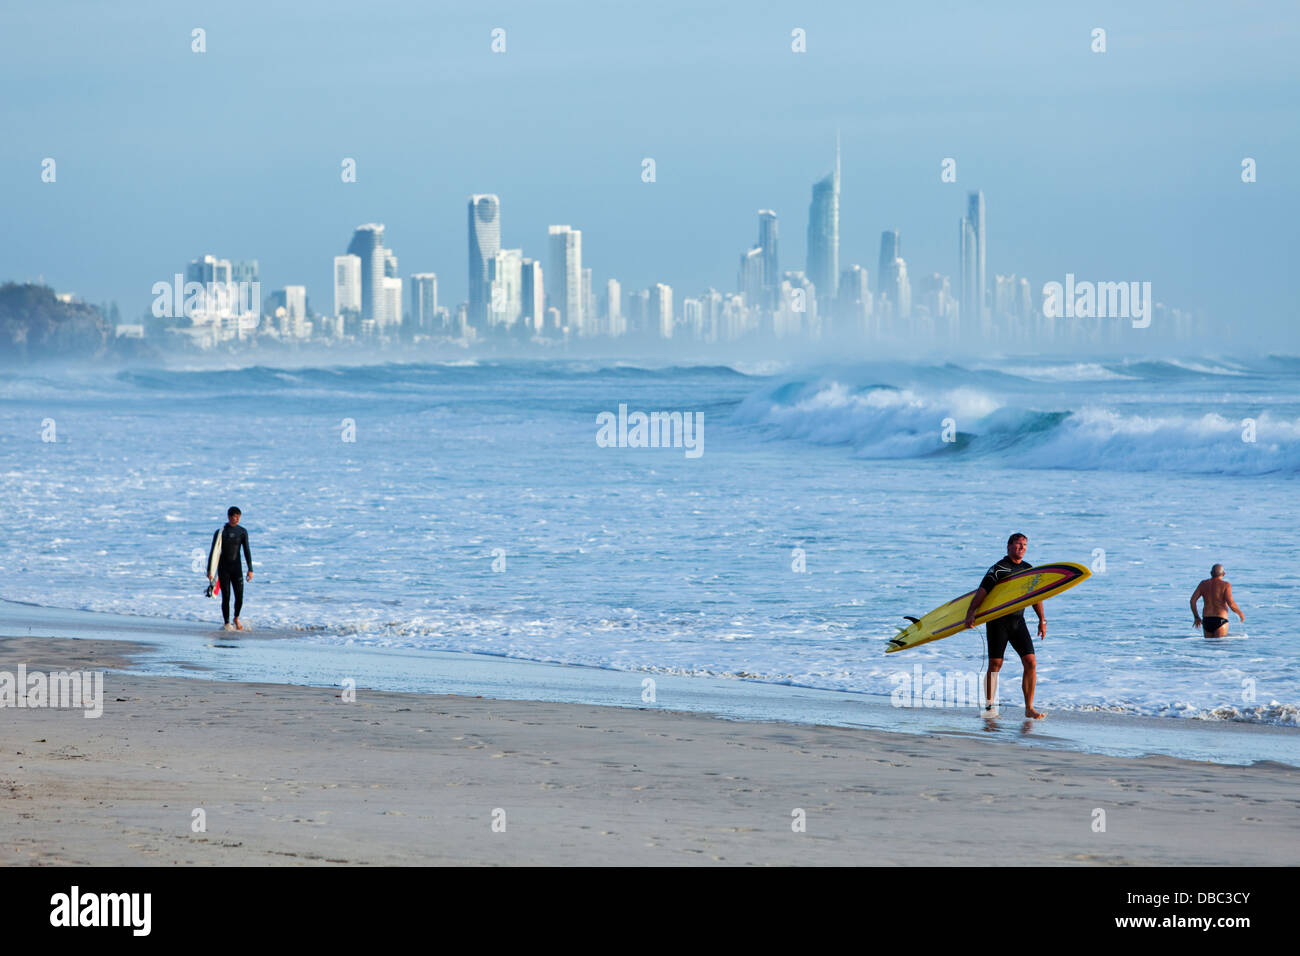 Les surfeurs sur la plage au Burleigh Heads à Surfers Paradise, en arrière-plan. Burley Heads, Gold Coast, Queensland, Australie Banque D'Images